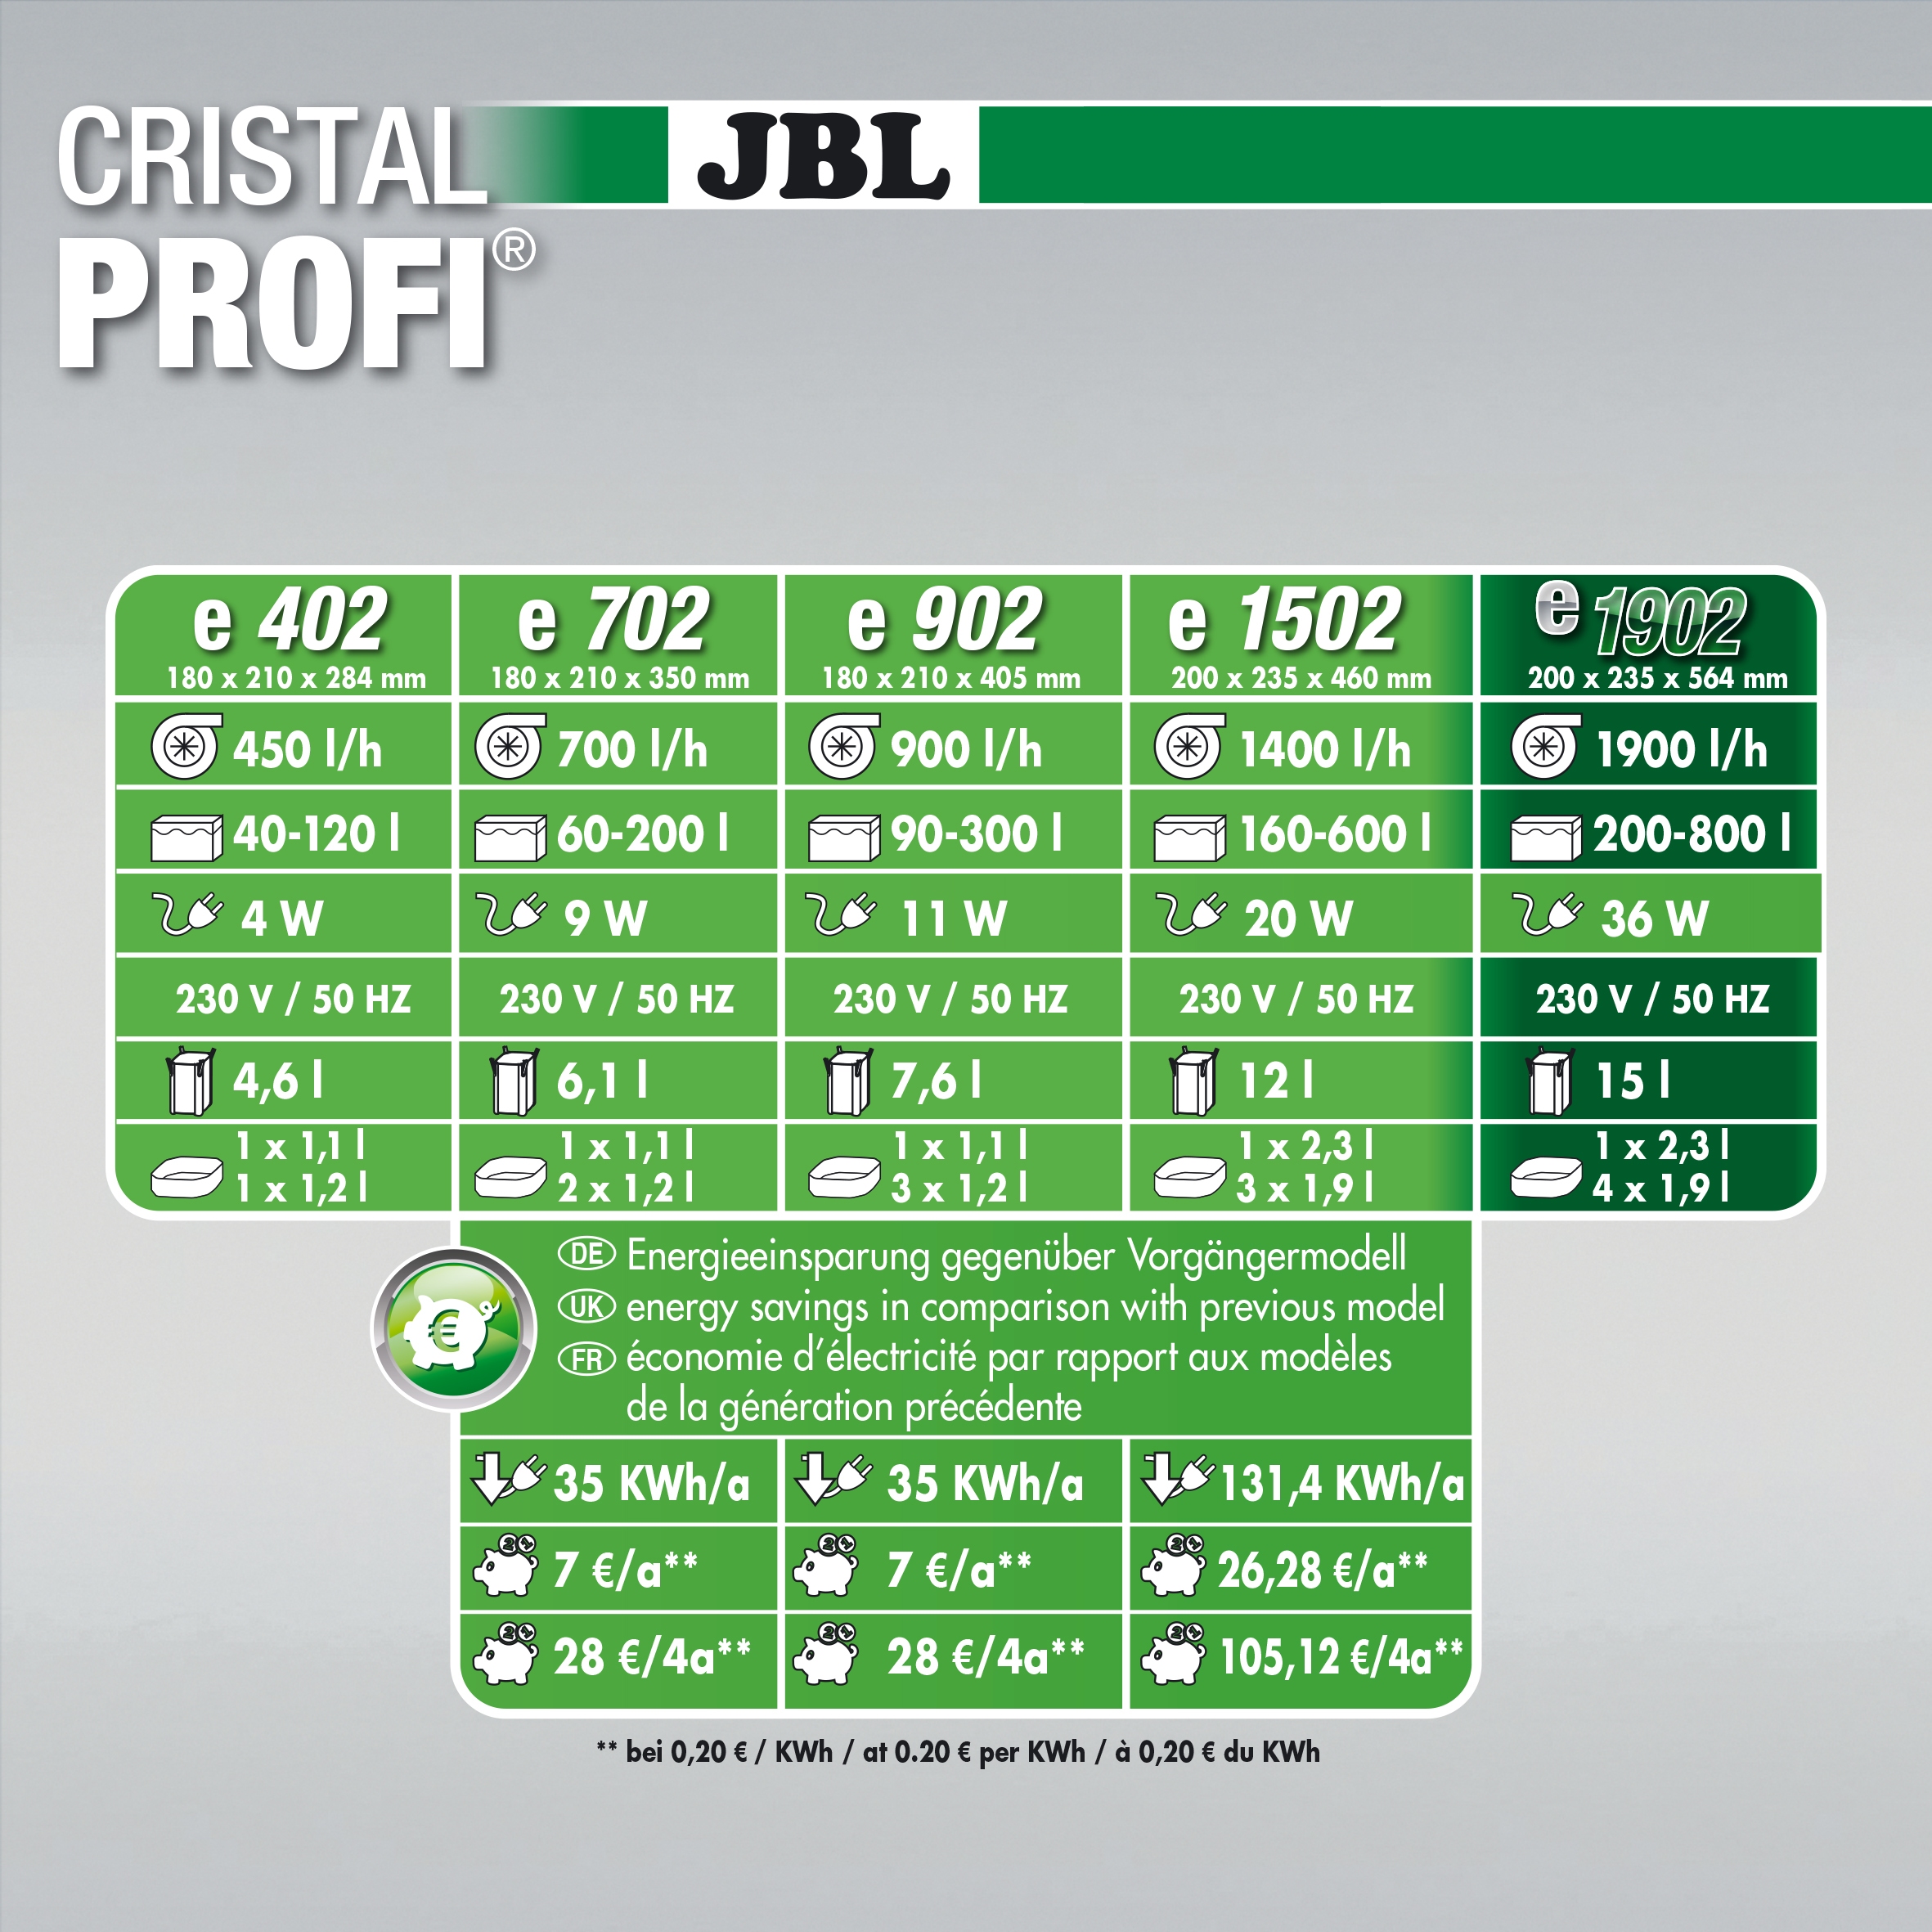 JBL CristalProfi e1902 